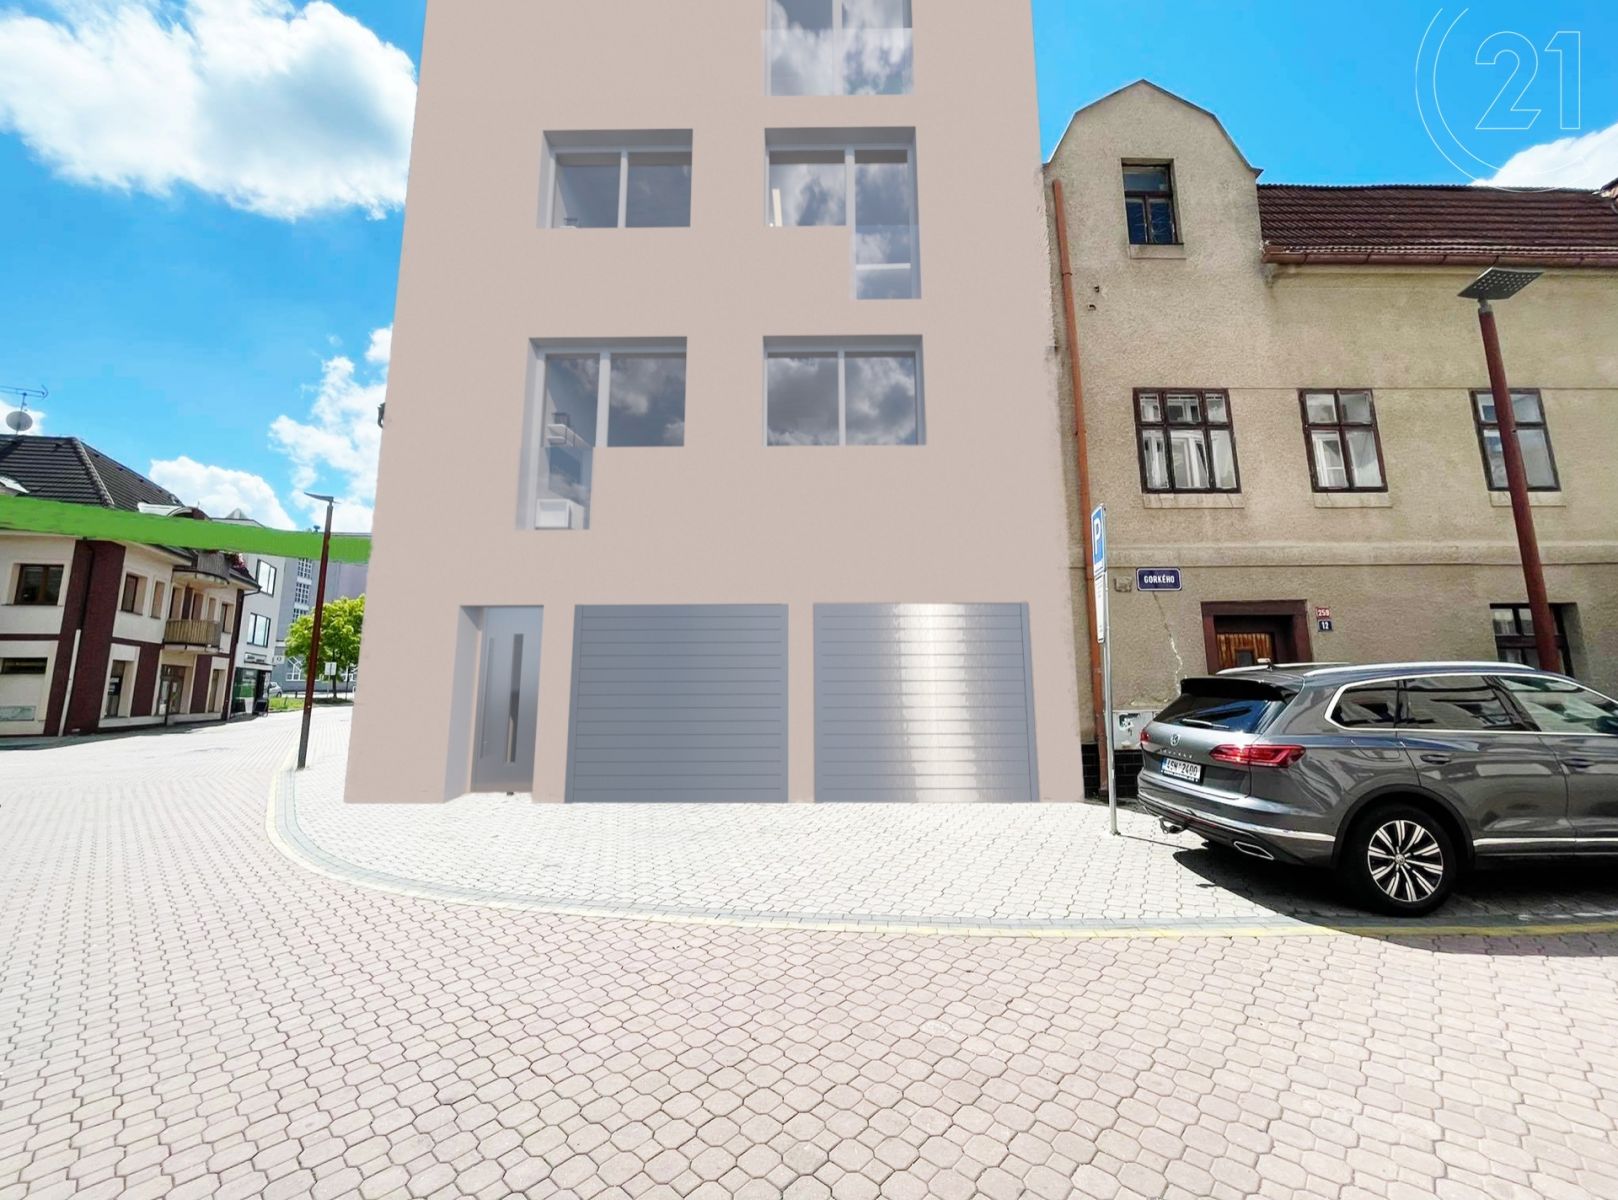 Prodej stavebního pozemku 115m2 s projektem a stavebním povolením na bytový dům v centru Kladna, obrázek č. 1